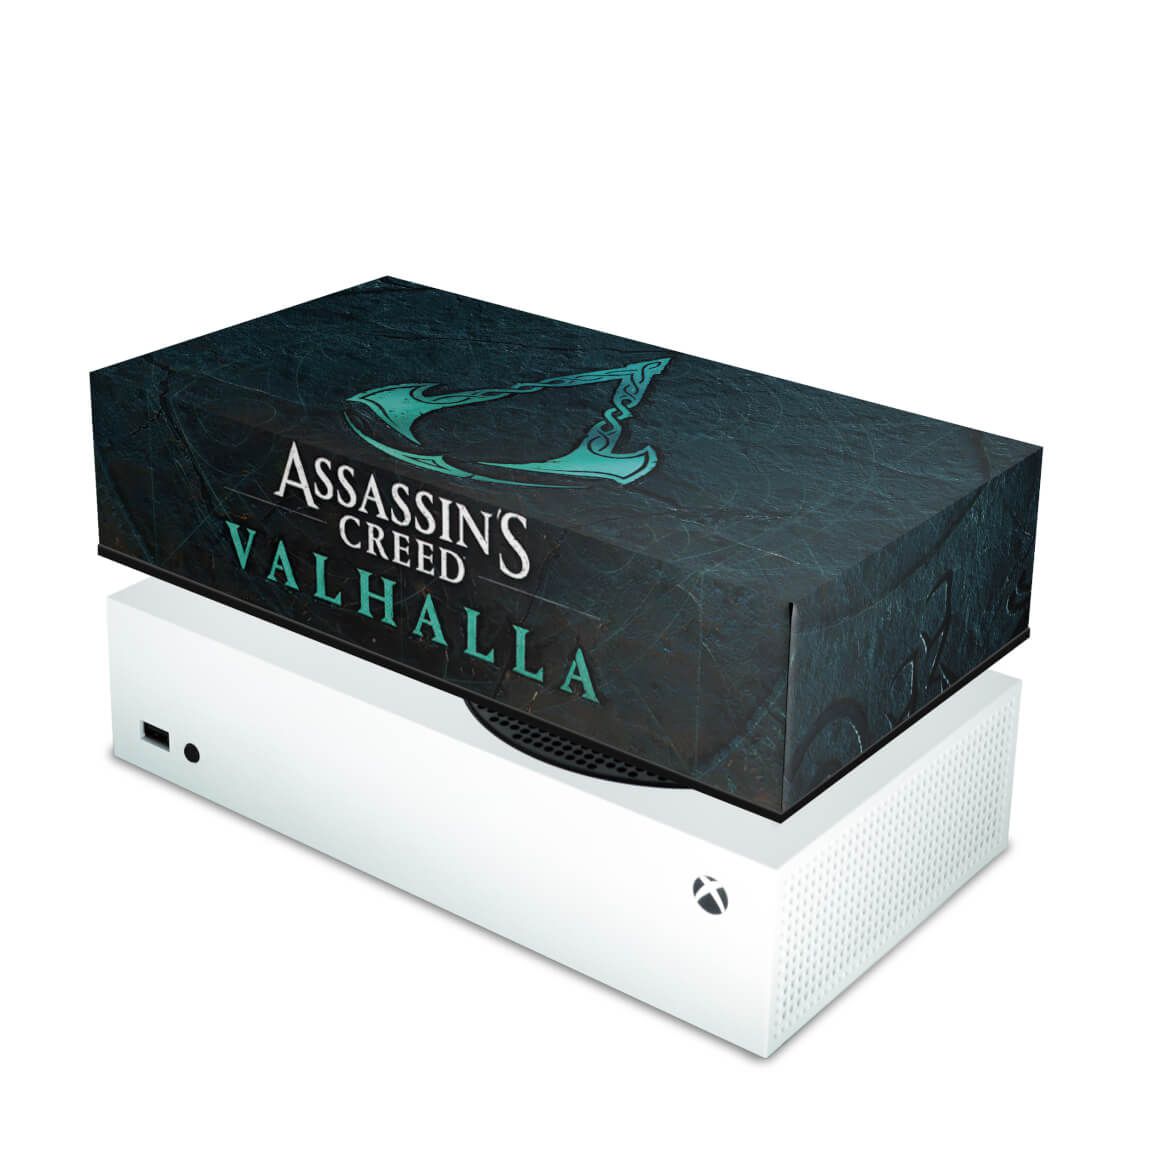 Assassin's Creed Valhalla - Xbox One e Xbox Series S